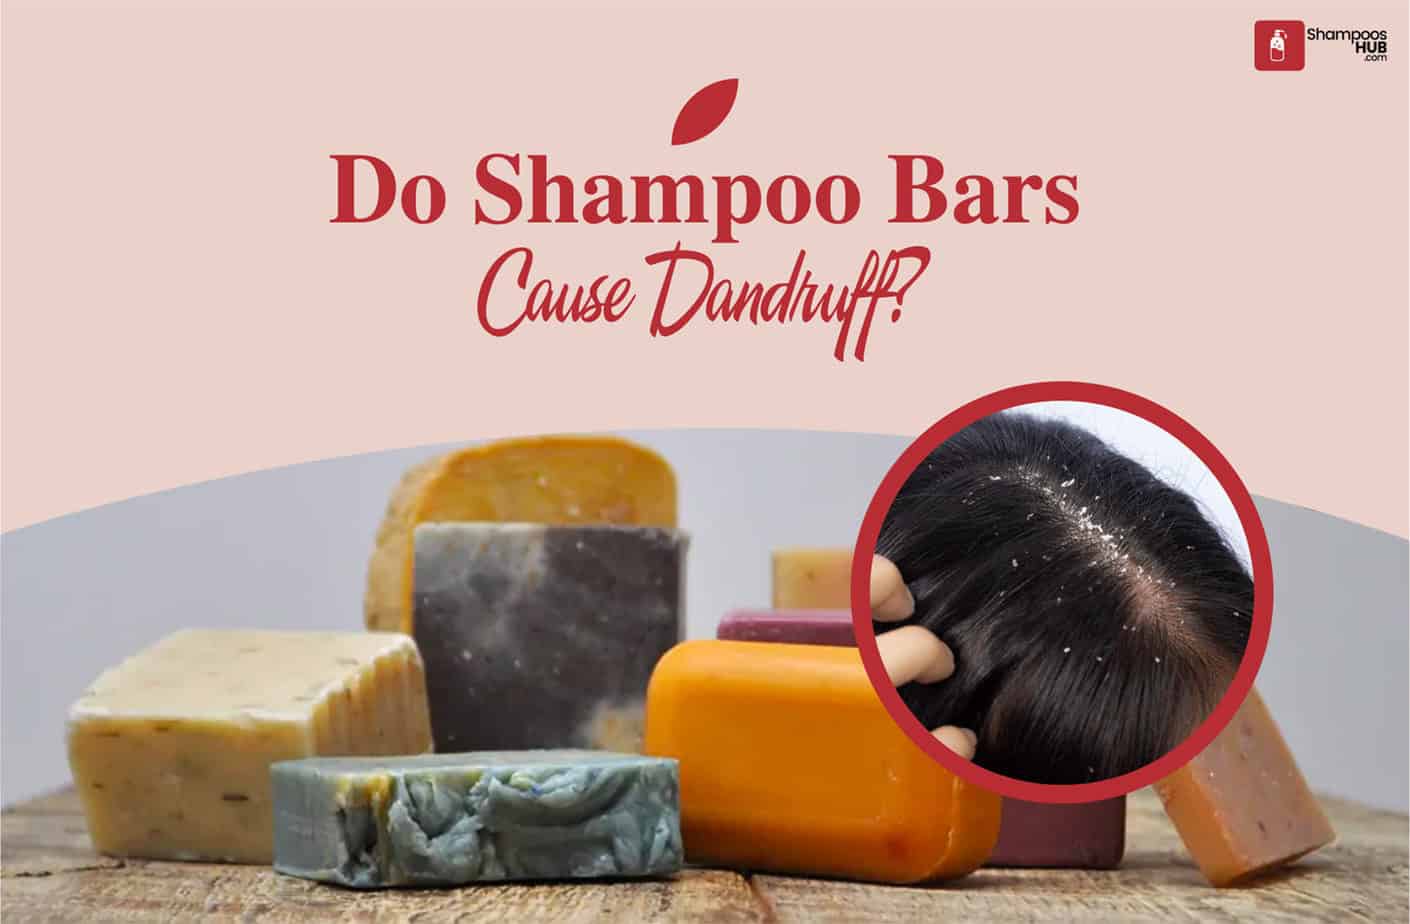 Do Shampoo Bars Cause Dandruff?